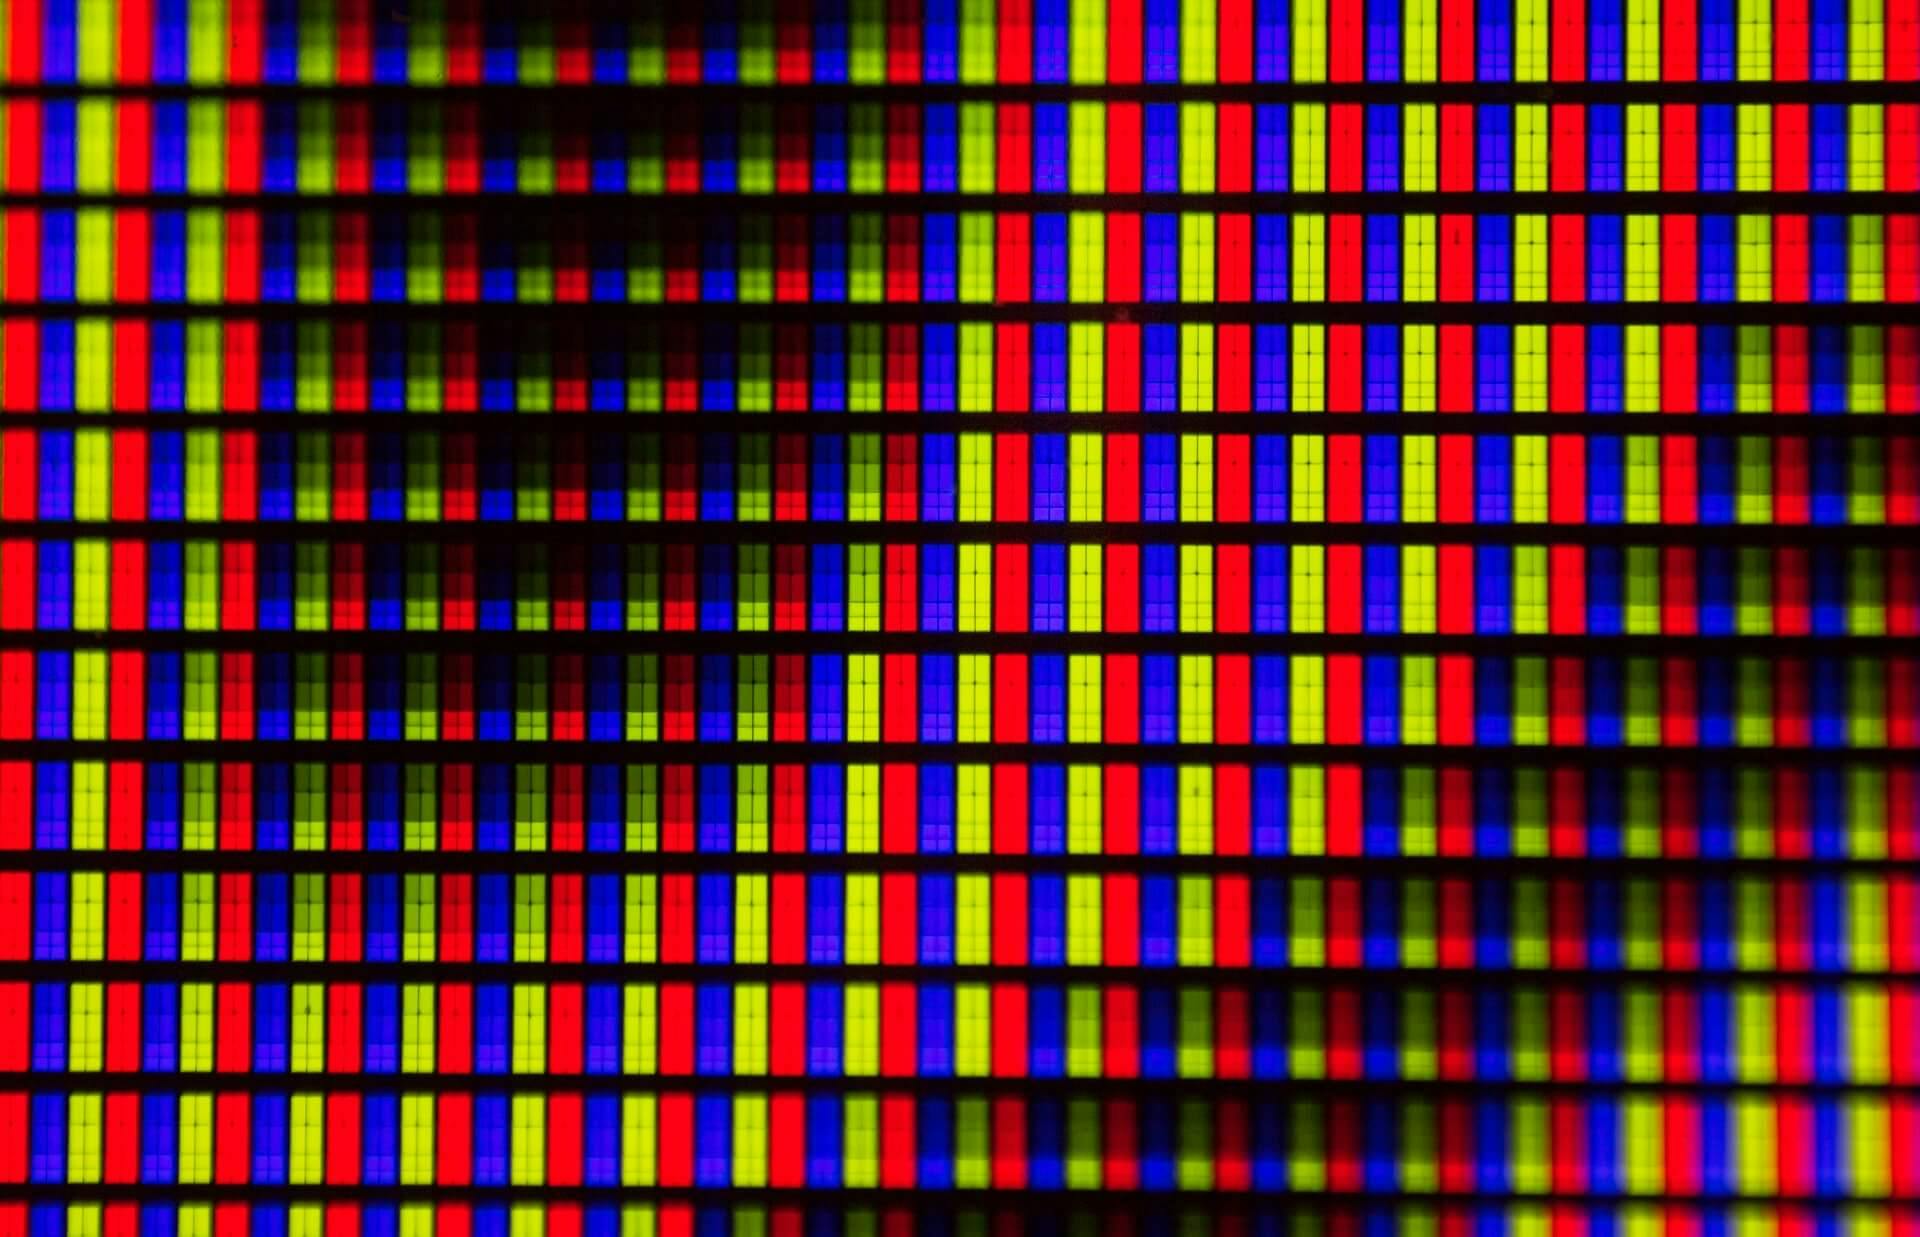 Blocos de cores vermelho, verde e azul representando os pixels na tela